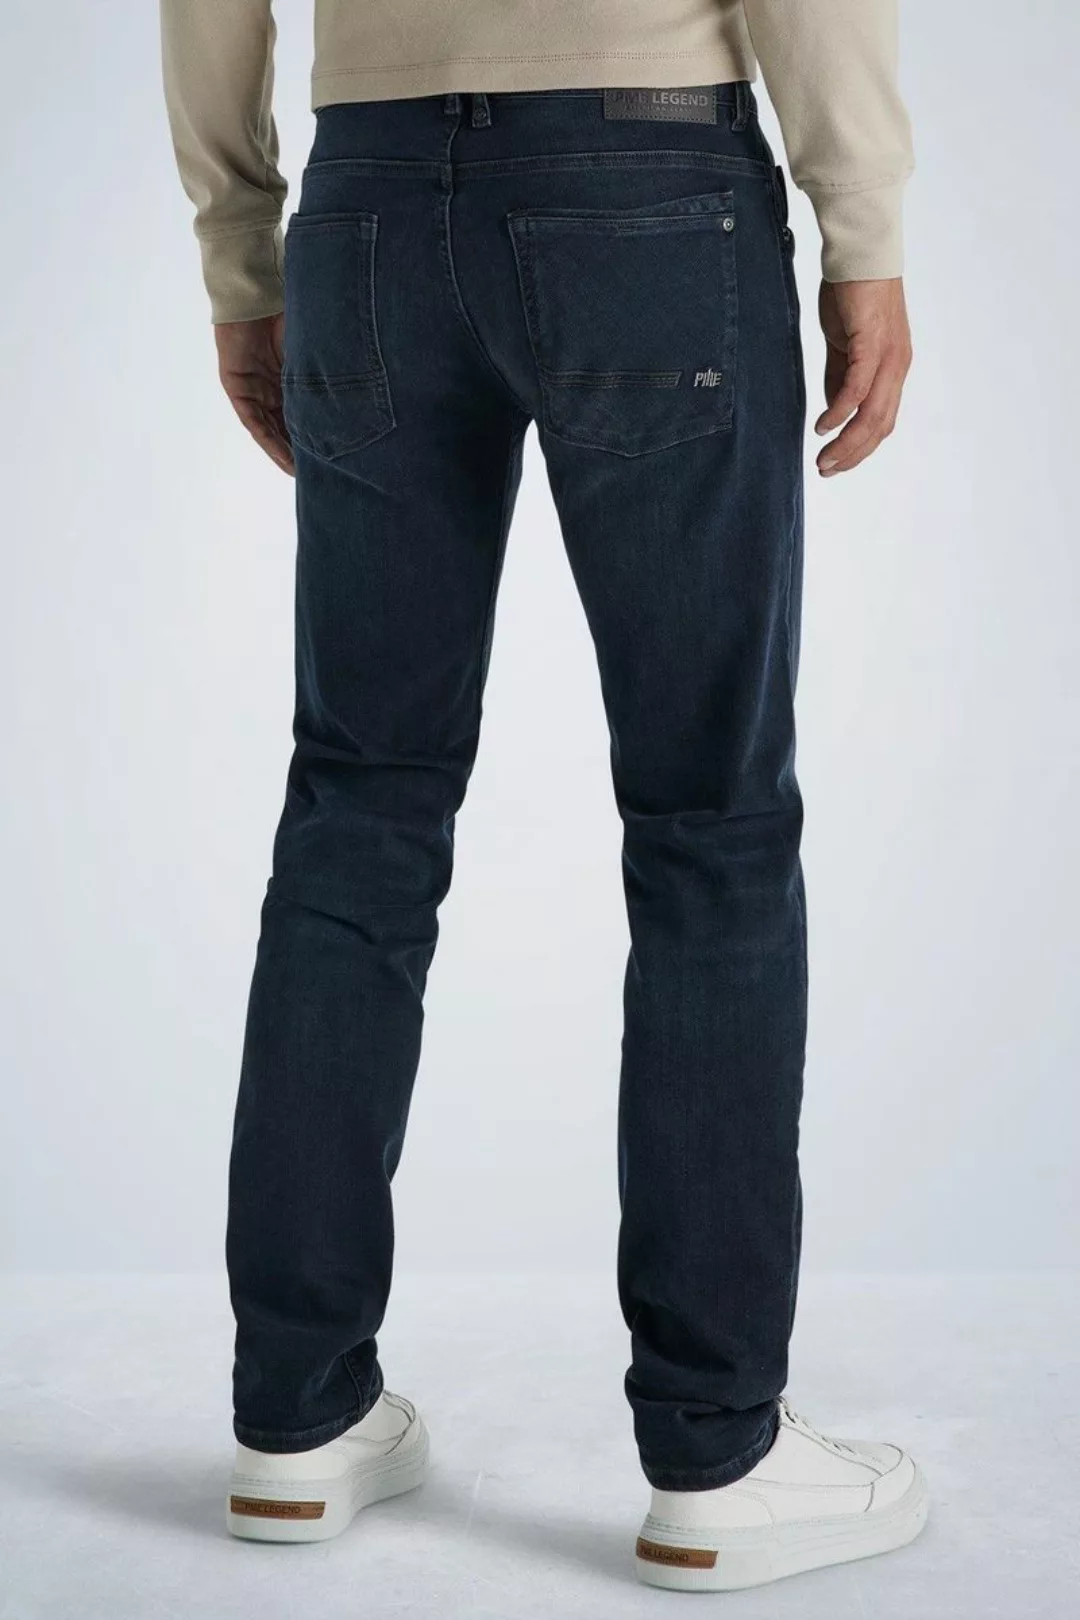 PME Legend Commander 3.0 Jeans Blau Schwarz - Größe W 38 - L 32 günstig online kaufen